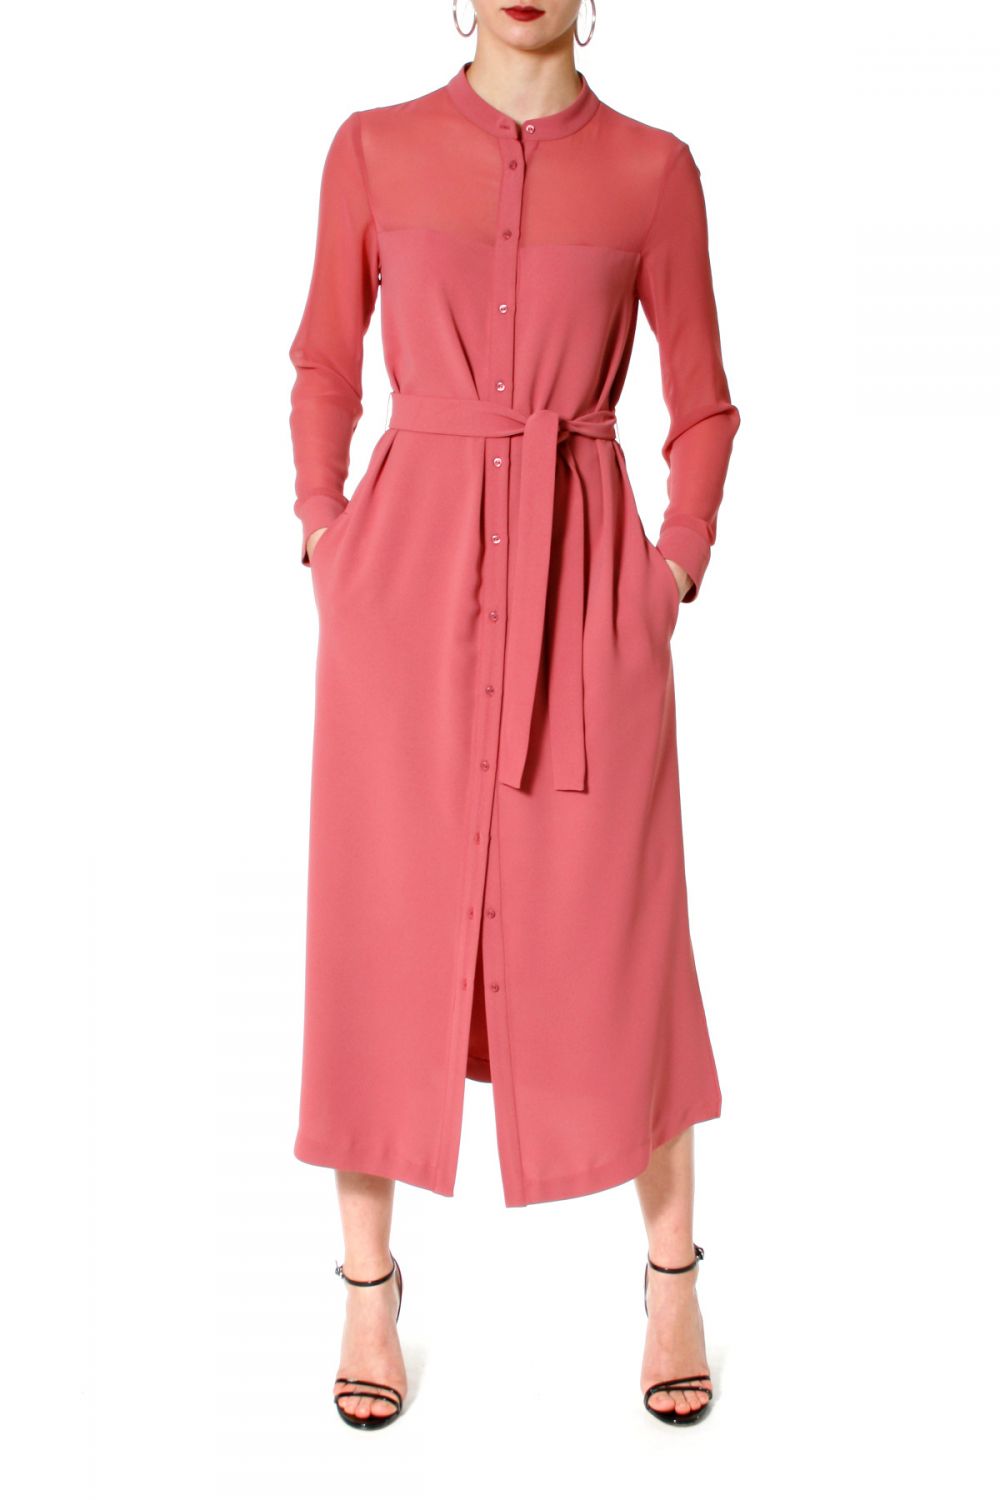 Dress Jillian pink venetian | AGGI